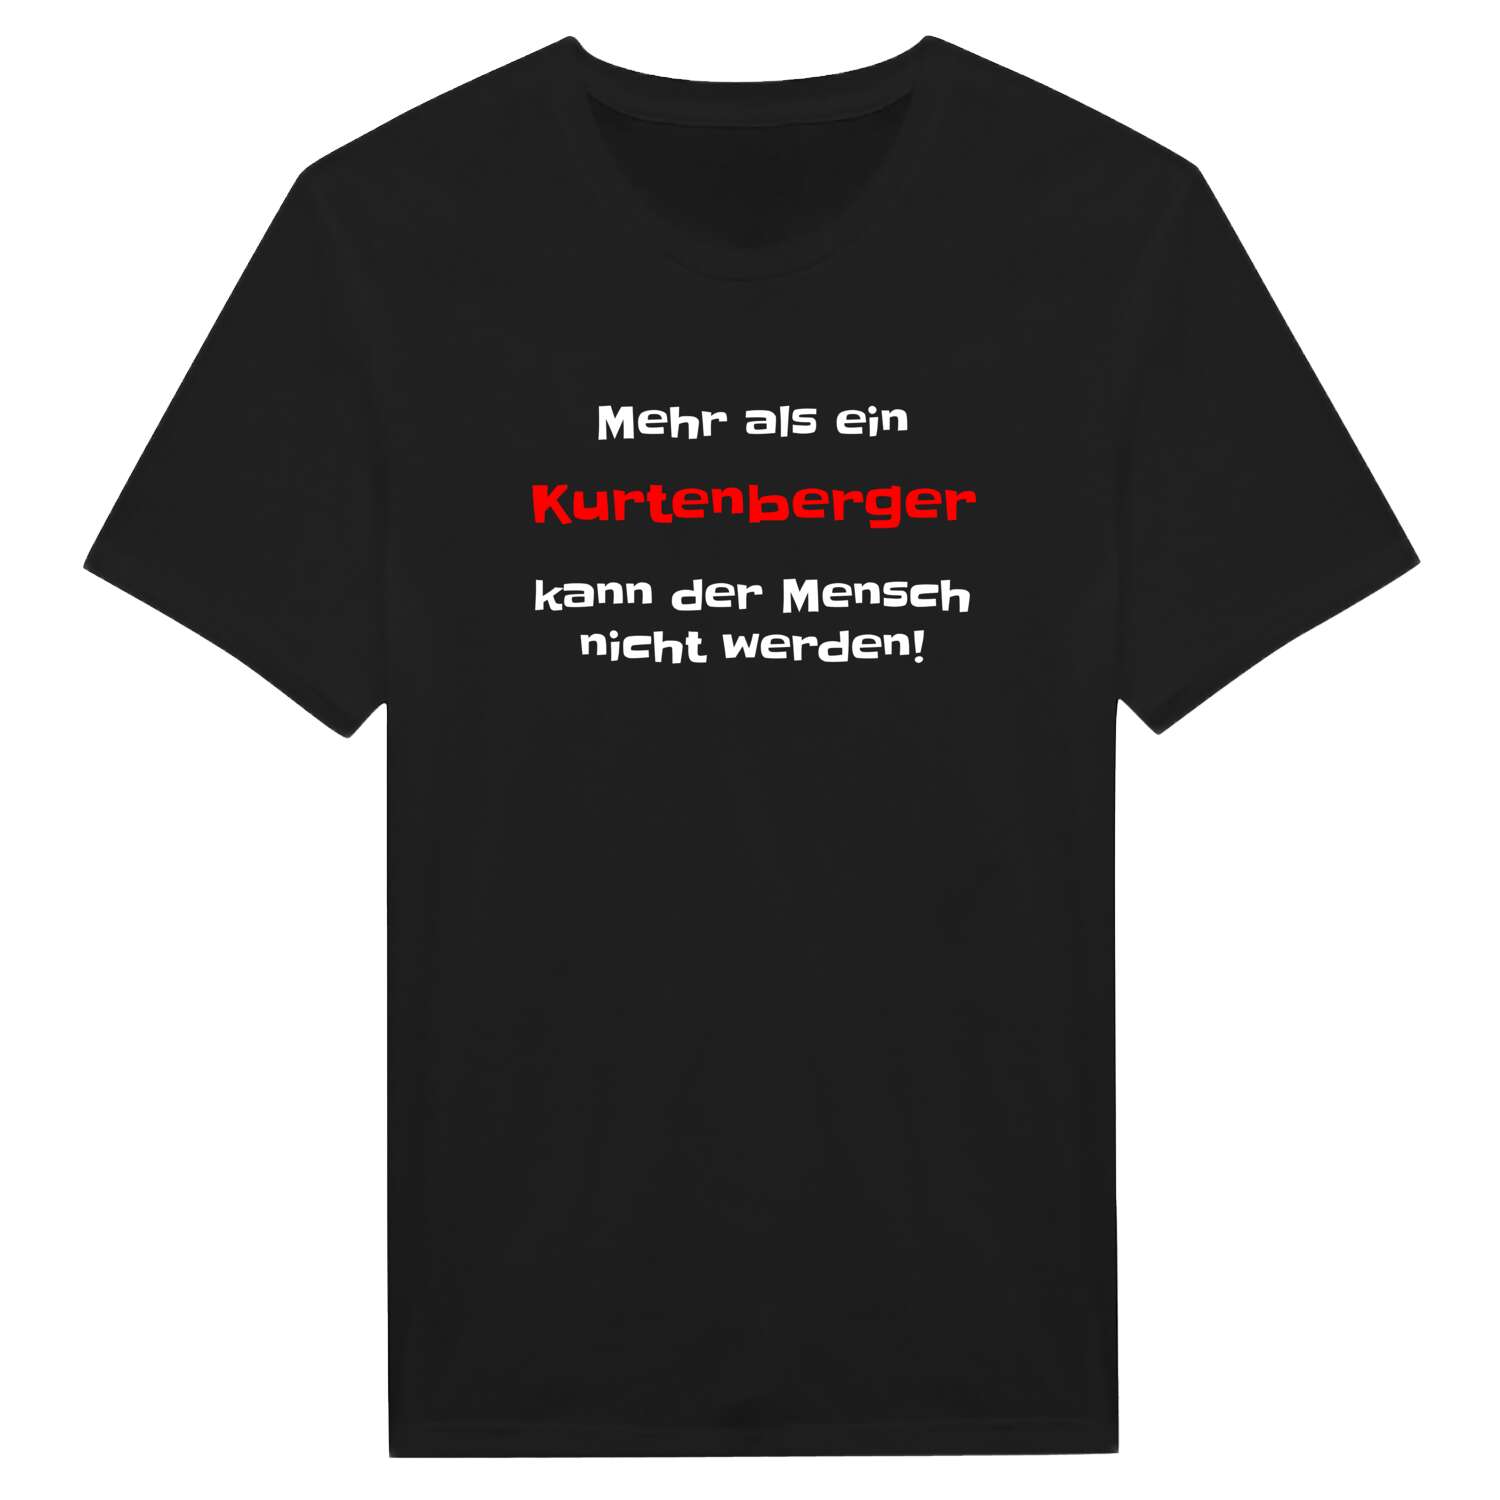 Kurtenberg T-Shirt »Mehr als ein«